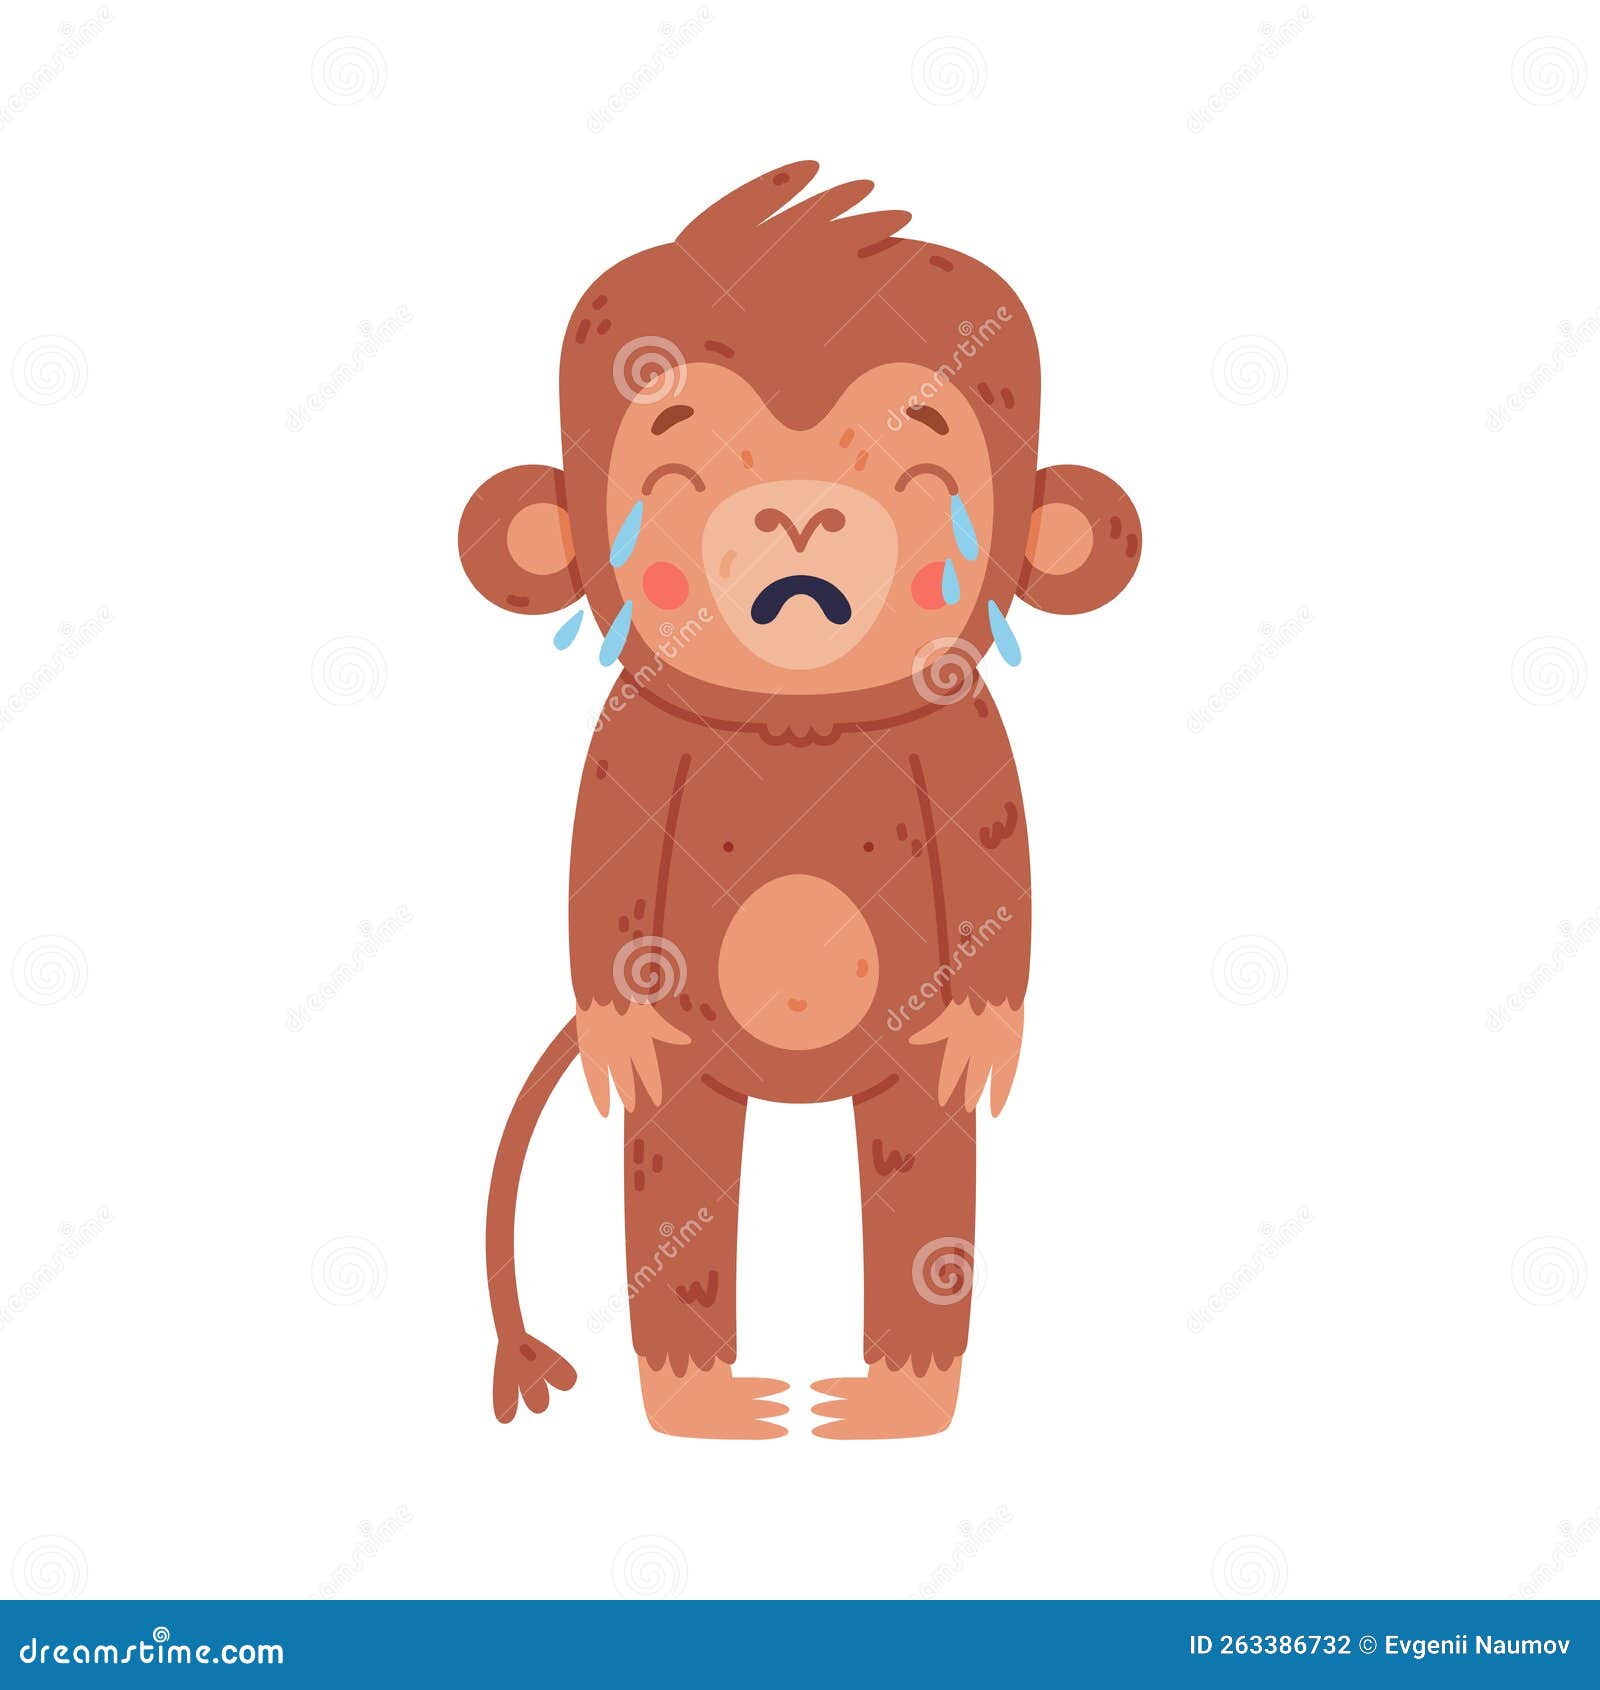 Desenho De Ilustração De Rosto De Macaco PNG , Clipart De Cara De